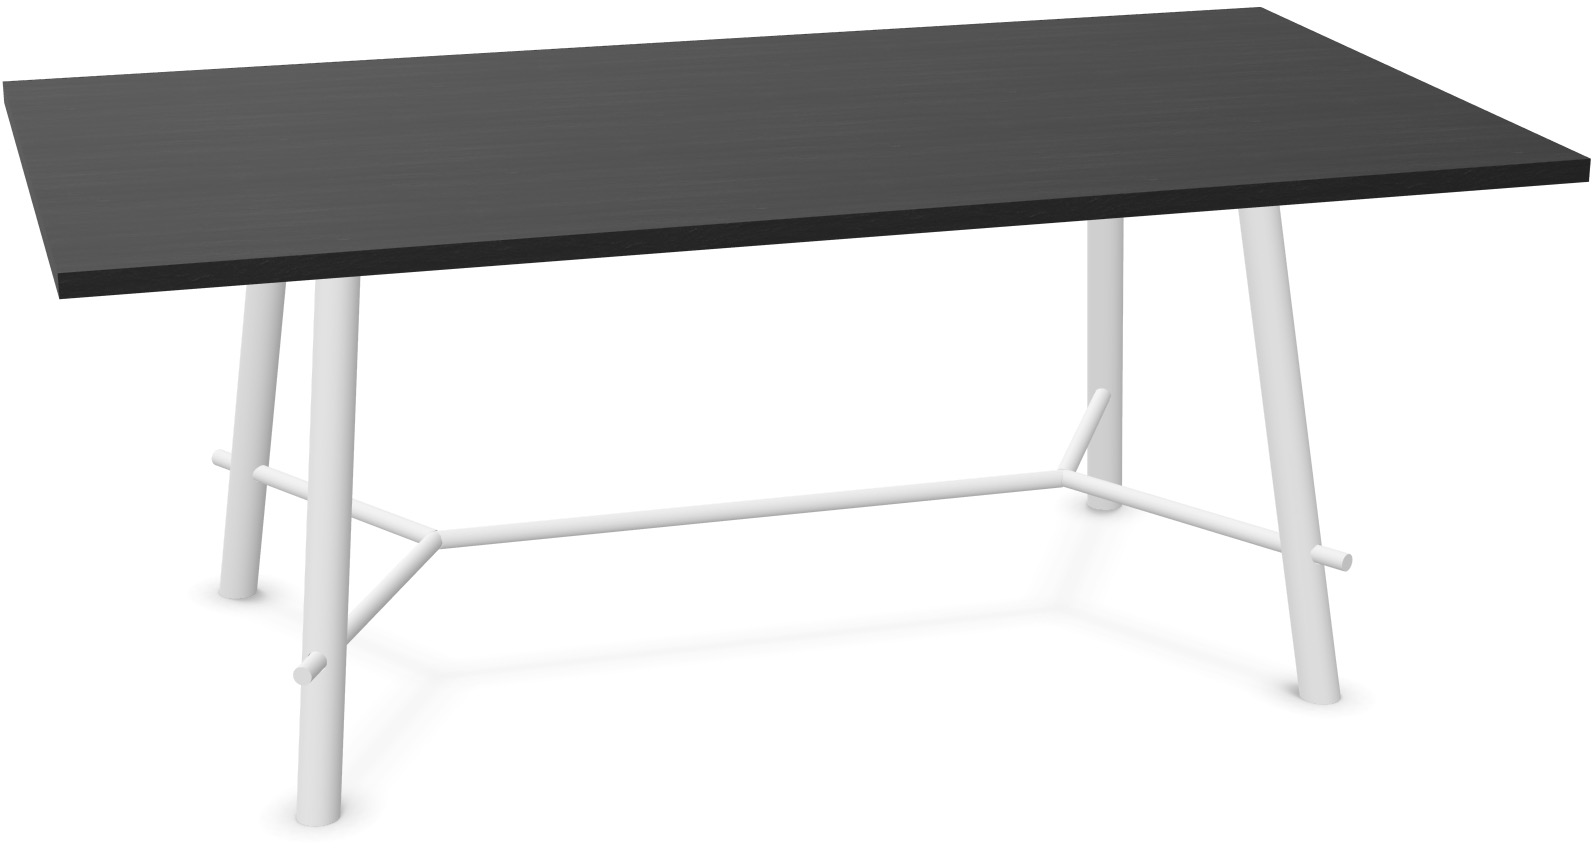 Record Living Maxi Tisch in Eiche schwarz / Eiche weiss präsentiert im Onlineshop von KAQTU Design AG. Esstisch ist von Infiniti Design